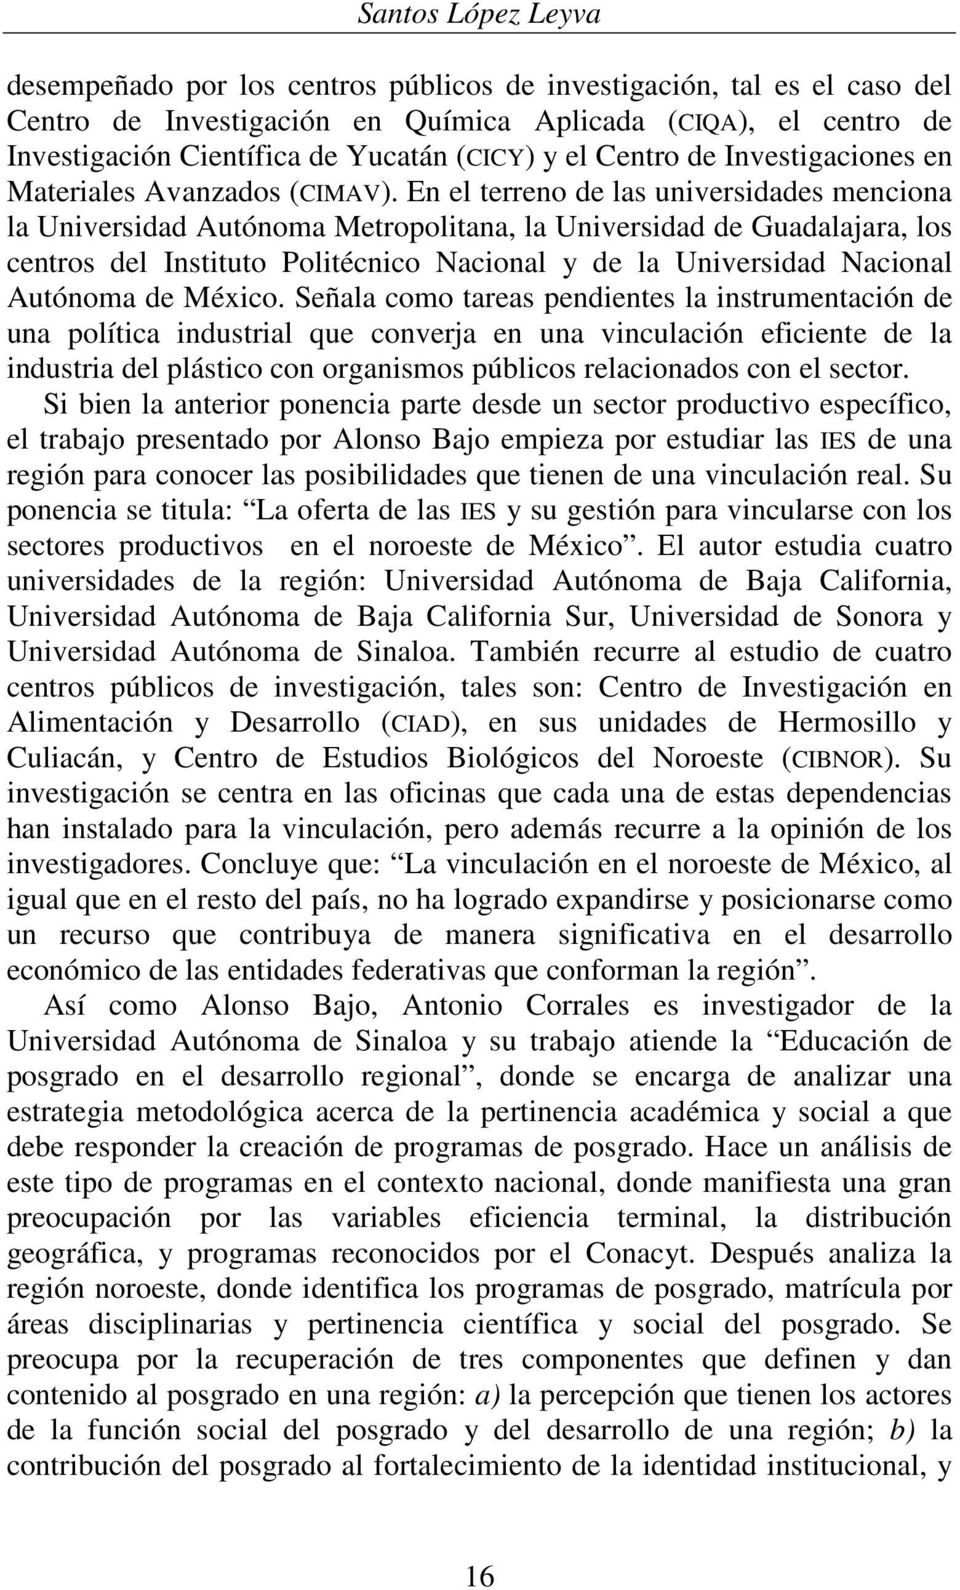 En el terreno de las universidades menciona la Universidad Autónoma Metropolitana, la Universidad de Guadalajara, los centros del Instituto Politécnico Nacional y de la Universidad Nacional Autónoma